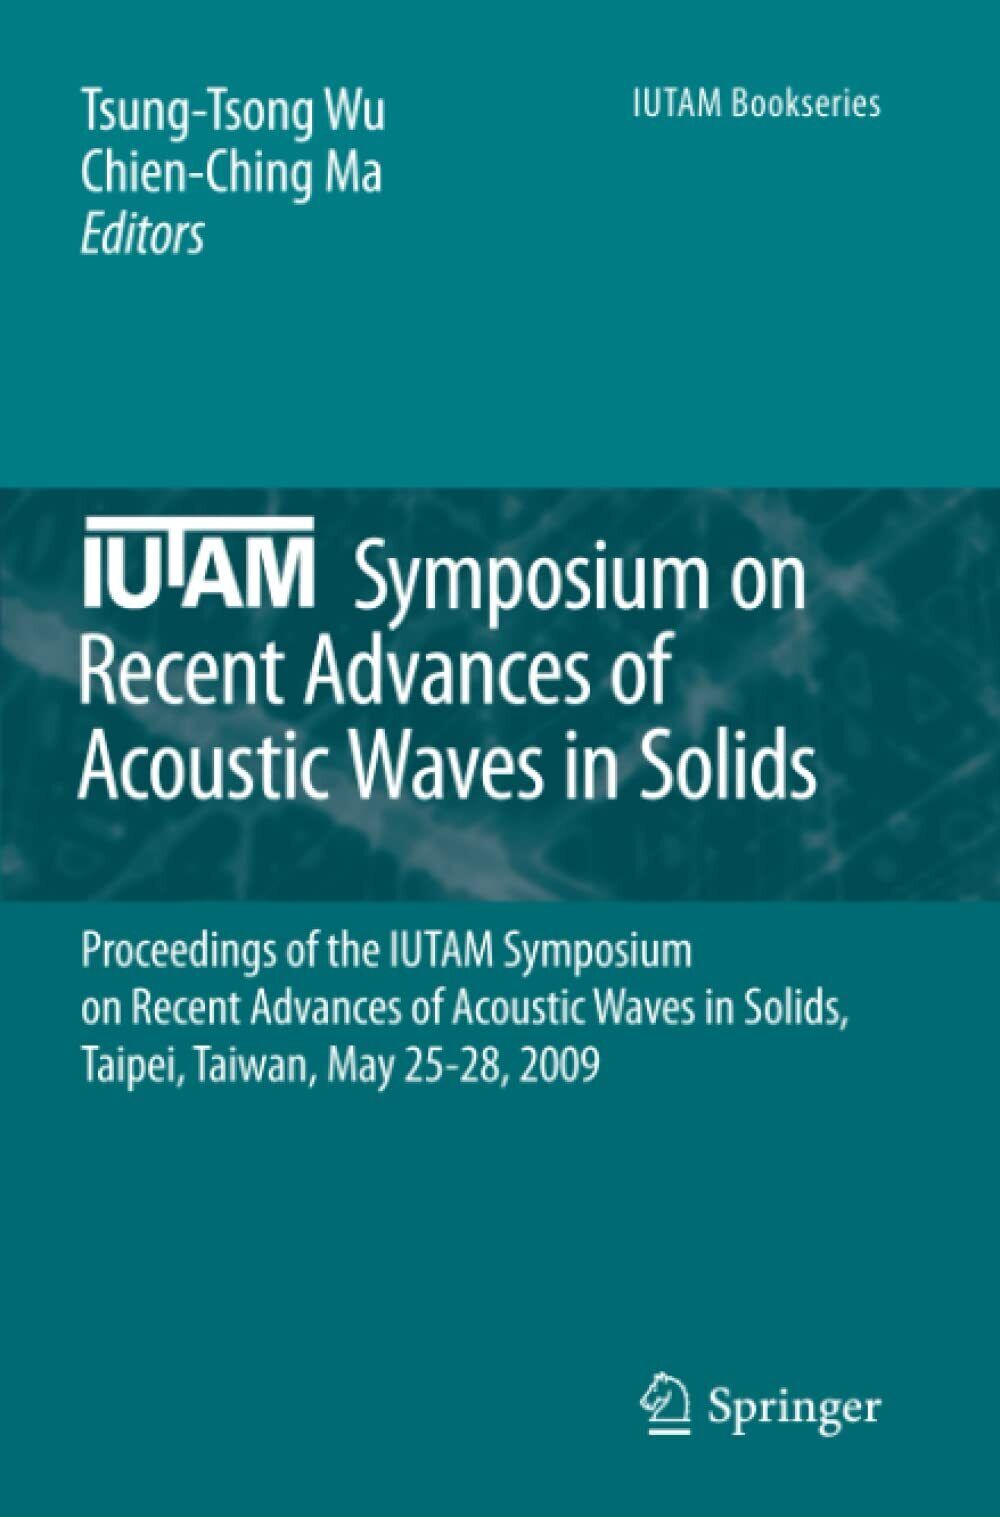 IUTAM Symposium on Recent Advances of Acoustic Waves in Solids - Springer, 2012